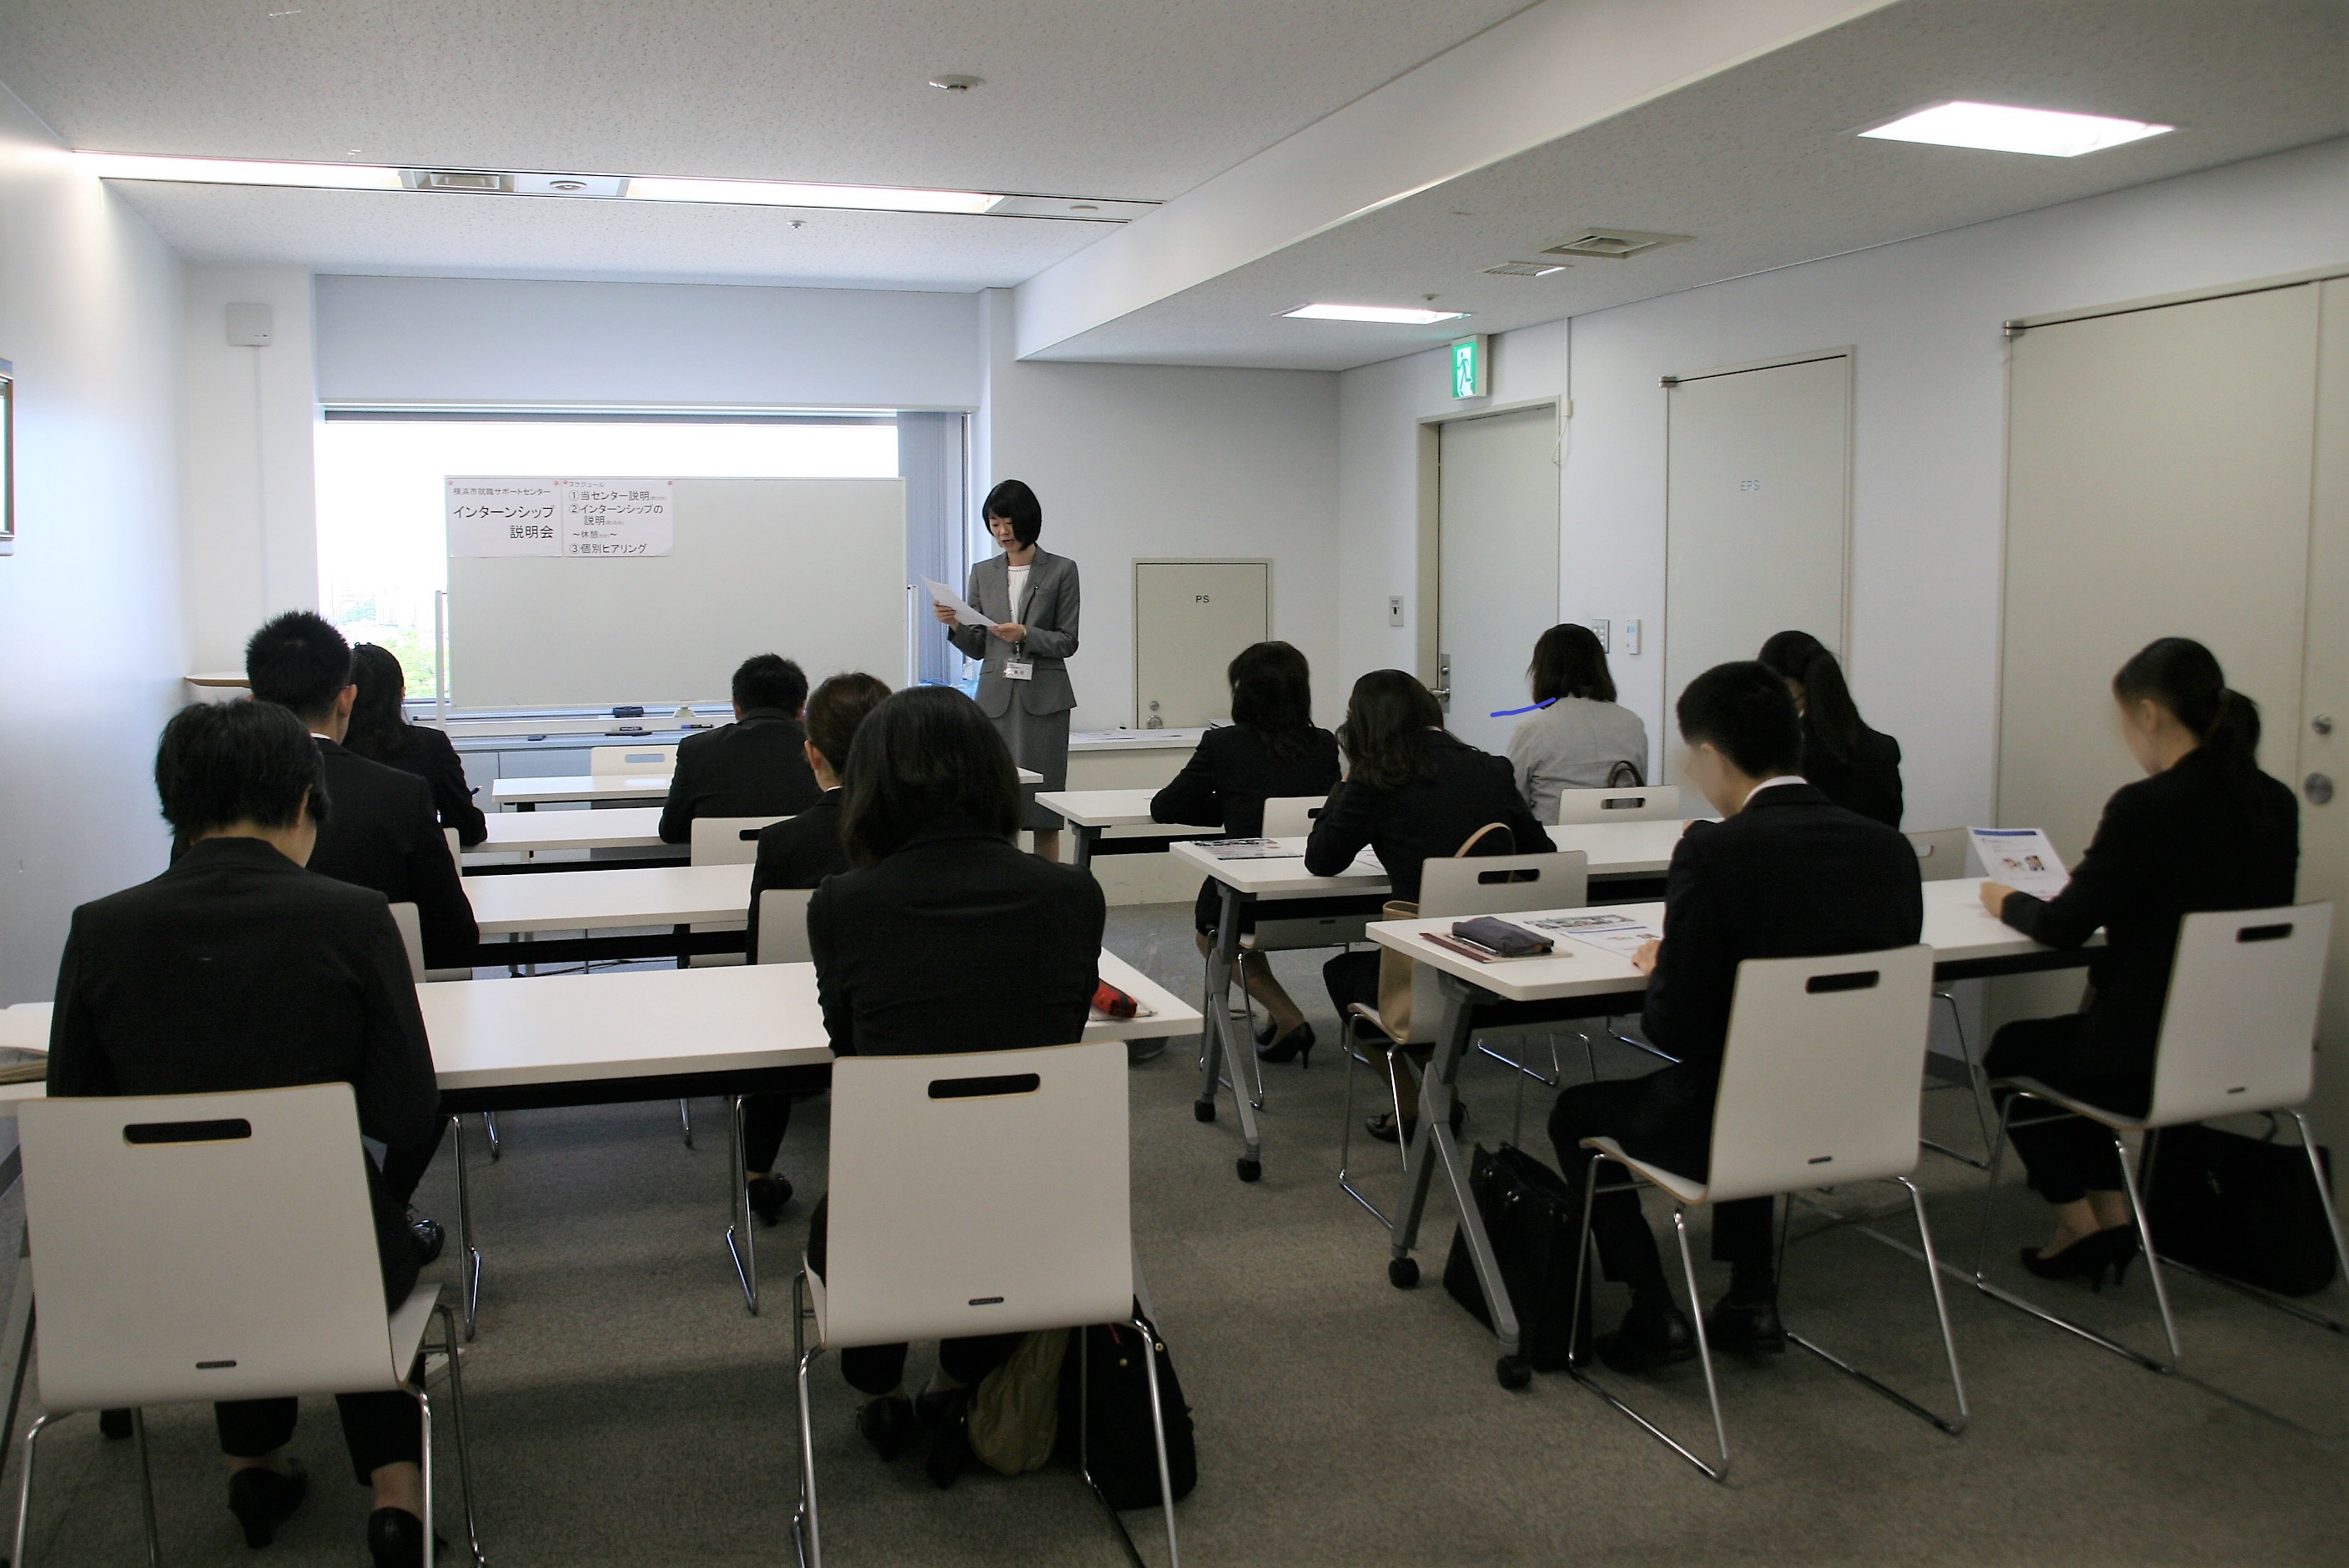 毎年100人以上が参加 年4回実施中 この仕事にハマるなんて思ってもみなかった 意外な適職が見つかる 横浜市の若年者 女性向けインターンシップ 30歳 からの インターンシップ